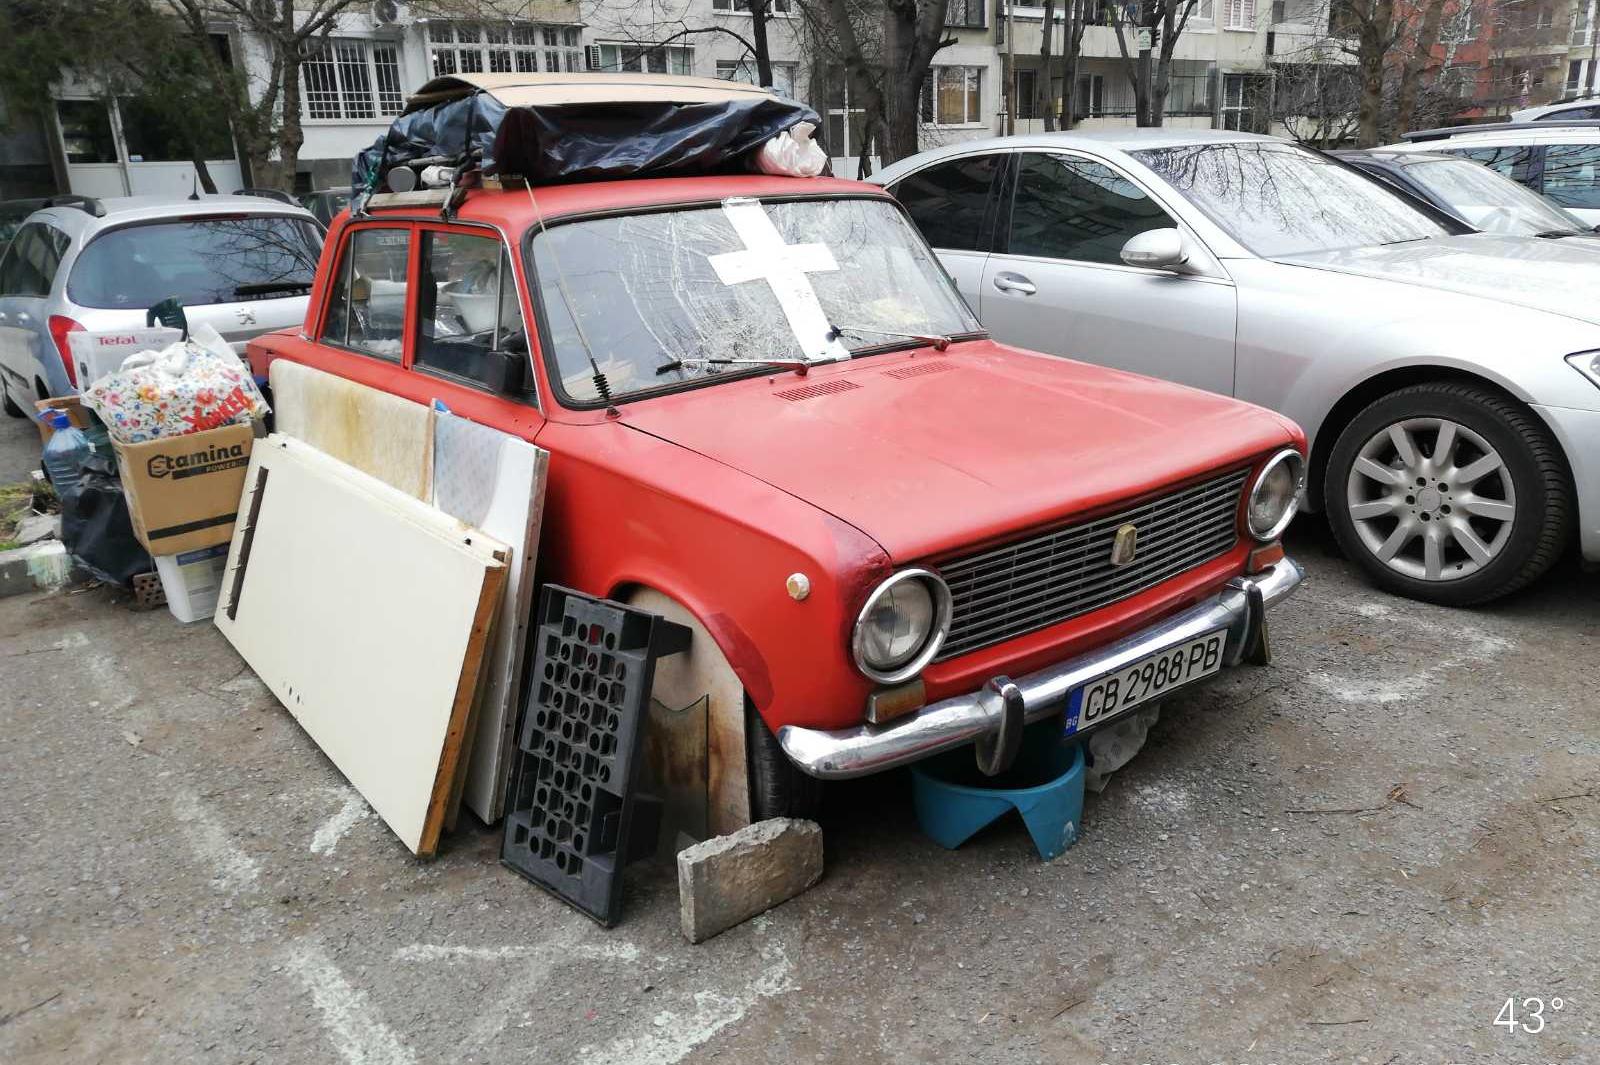 Установиха собственика на колата с отпадъците на ул. "Корал" в Слатина